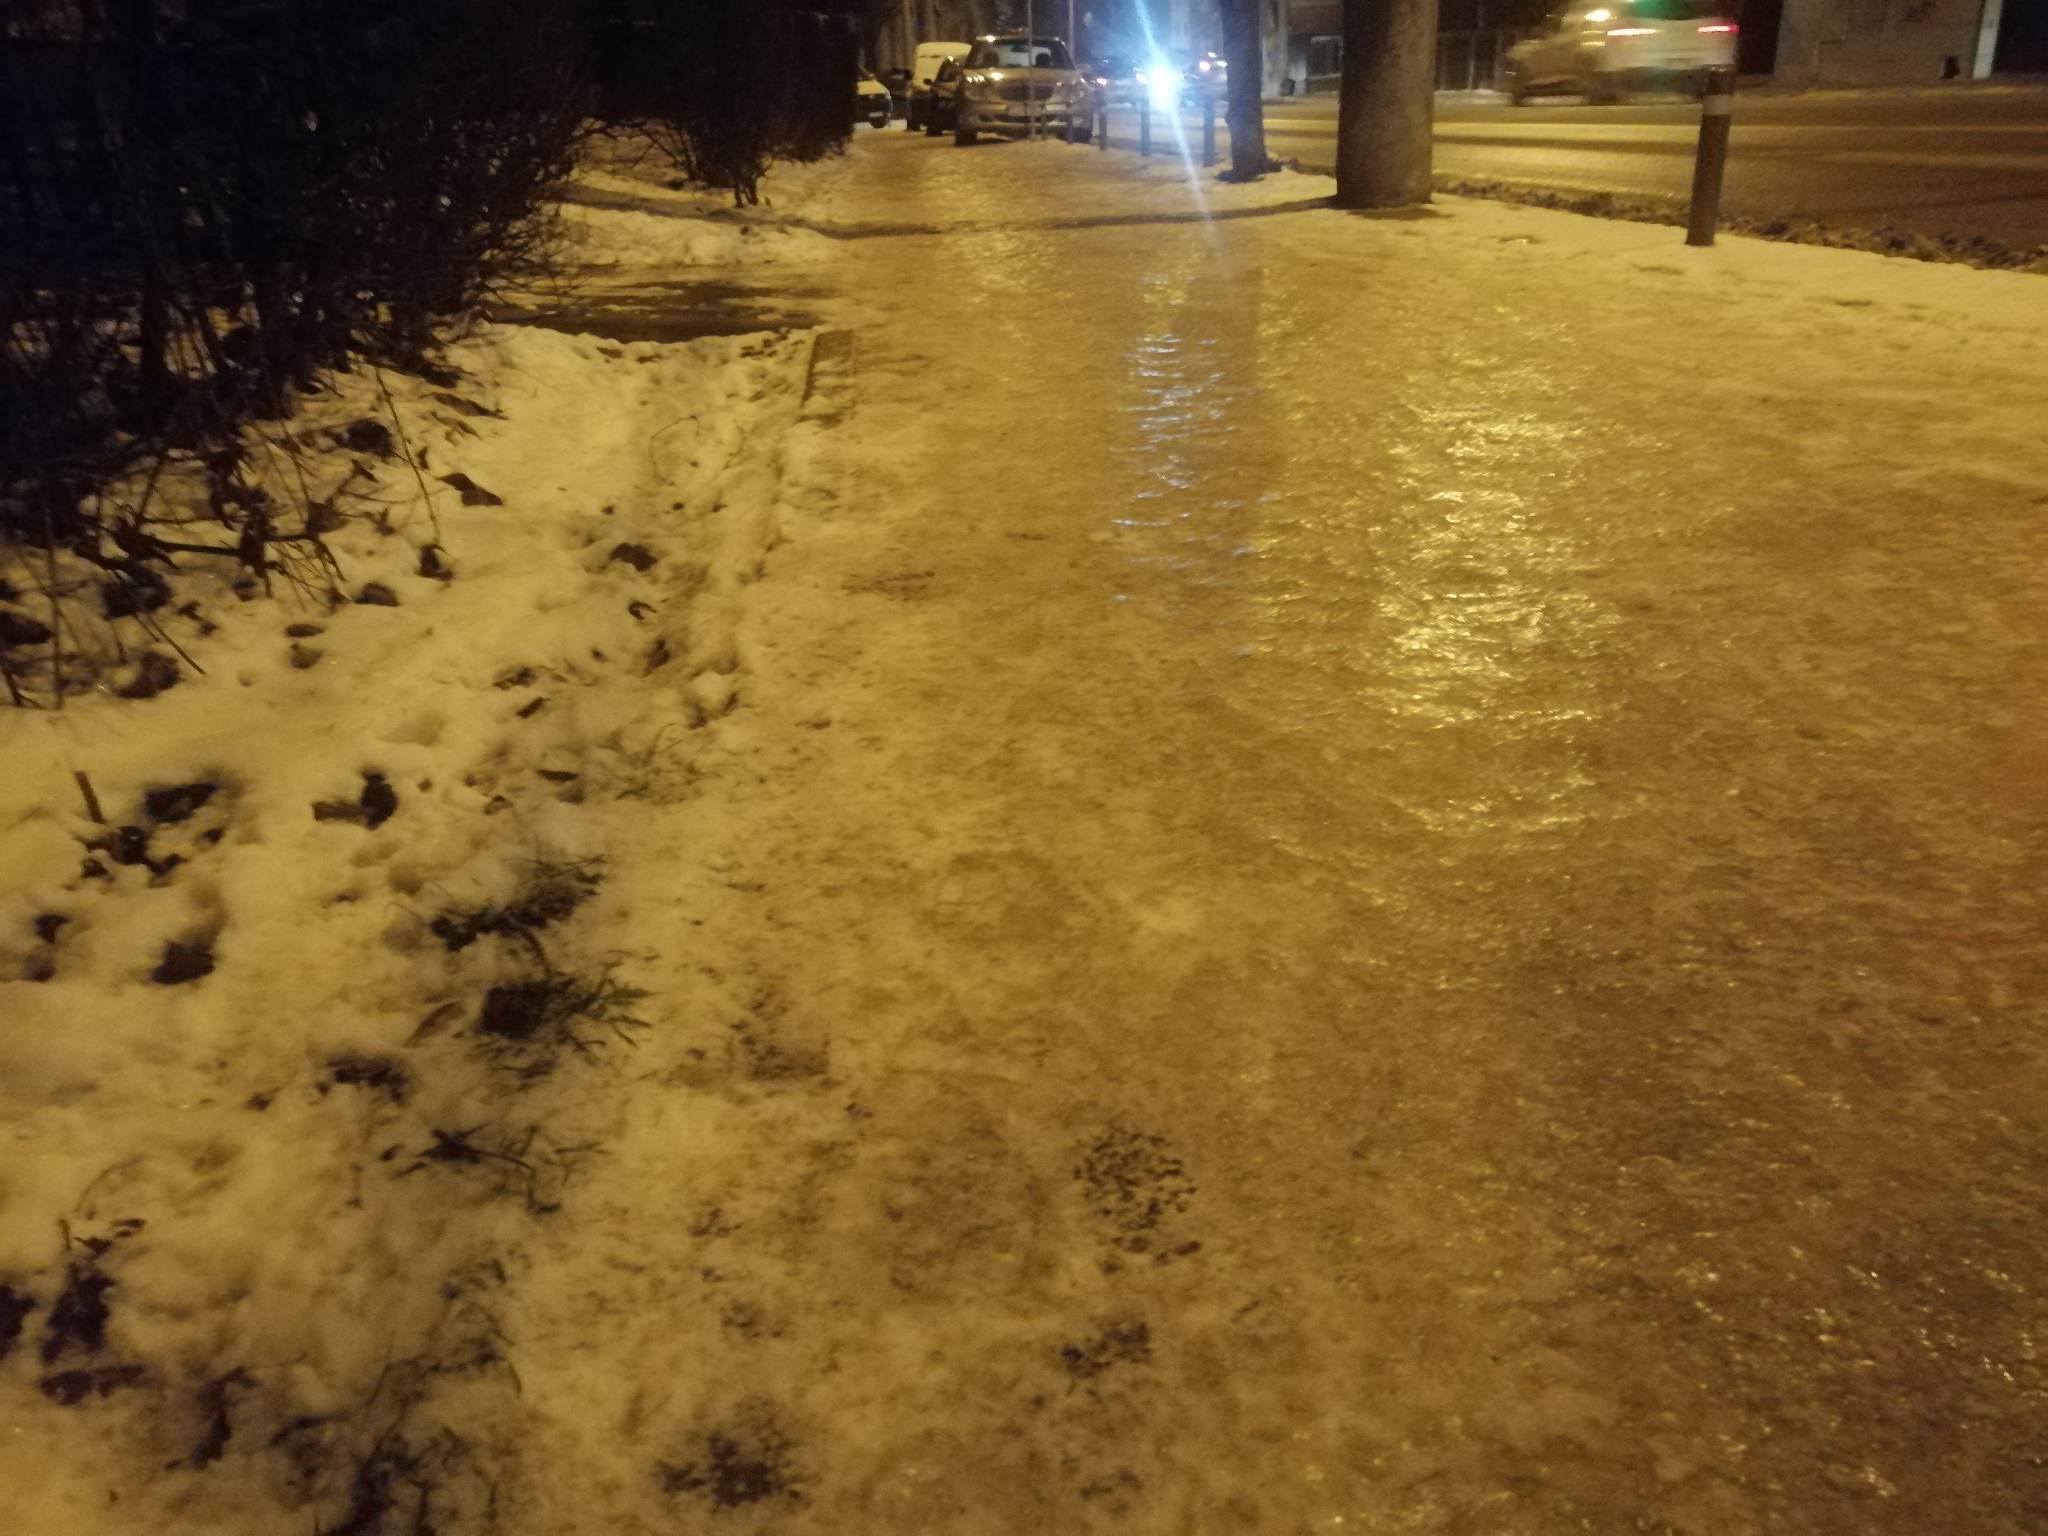 Trotuar înghețat și cu zăpadă pe strada Câmpului din Cluj-Napoca / Foto: monitorulcj.ro